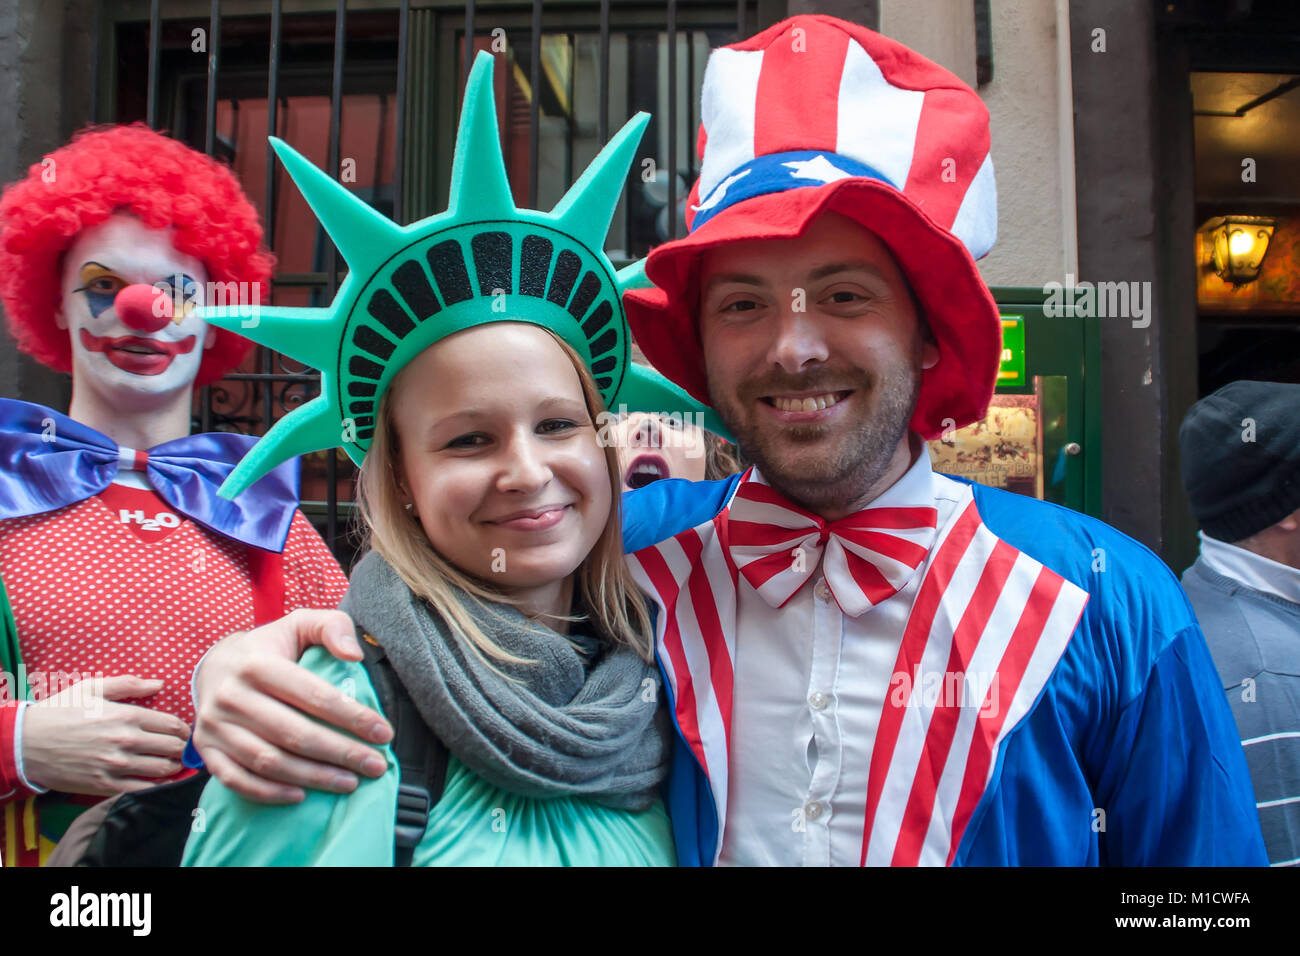 Köln, Deutschland - 14. März 2014: Wie ist die Straße, Karneval, ein hübsches junges Paar ist als Mister und Miss Liberty verkleidet Stockfoto